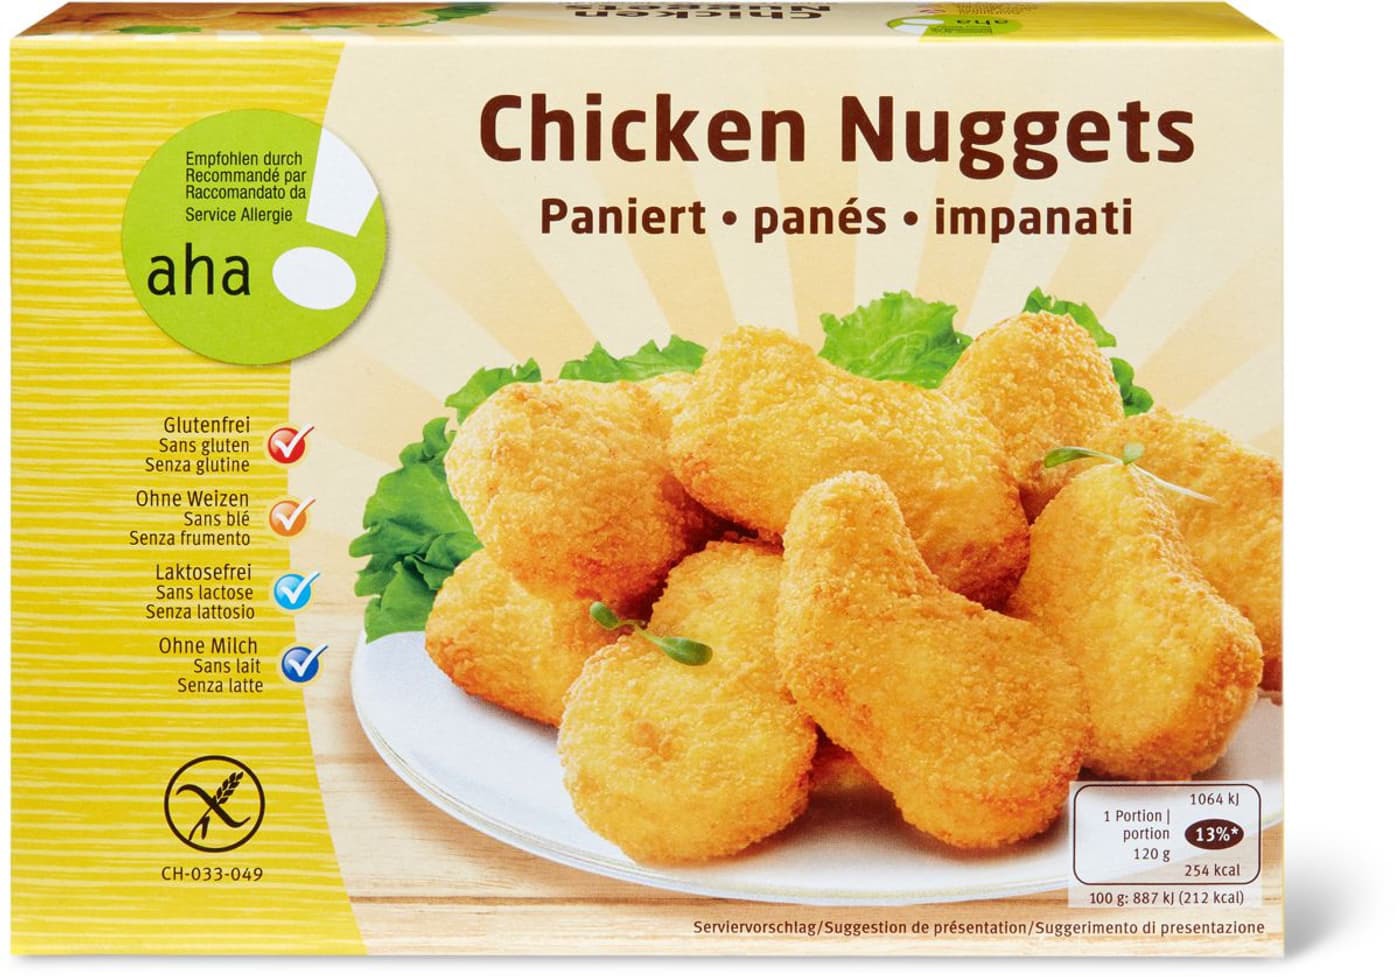 Les poulets panés peuvent contenir du gluten contrairement à ce qui est indiqué sur l'emballage.